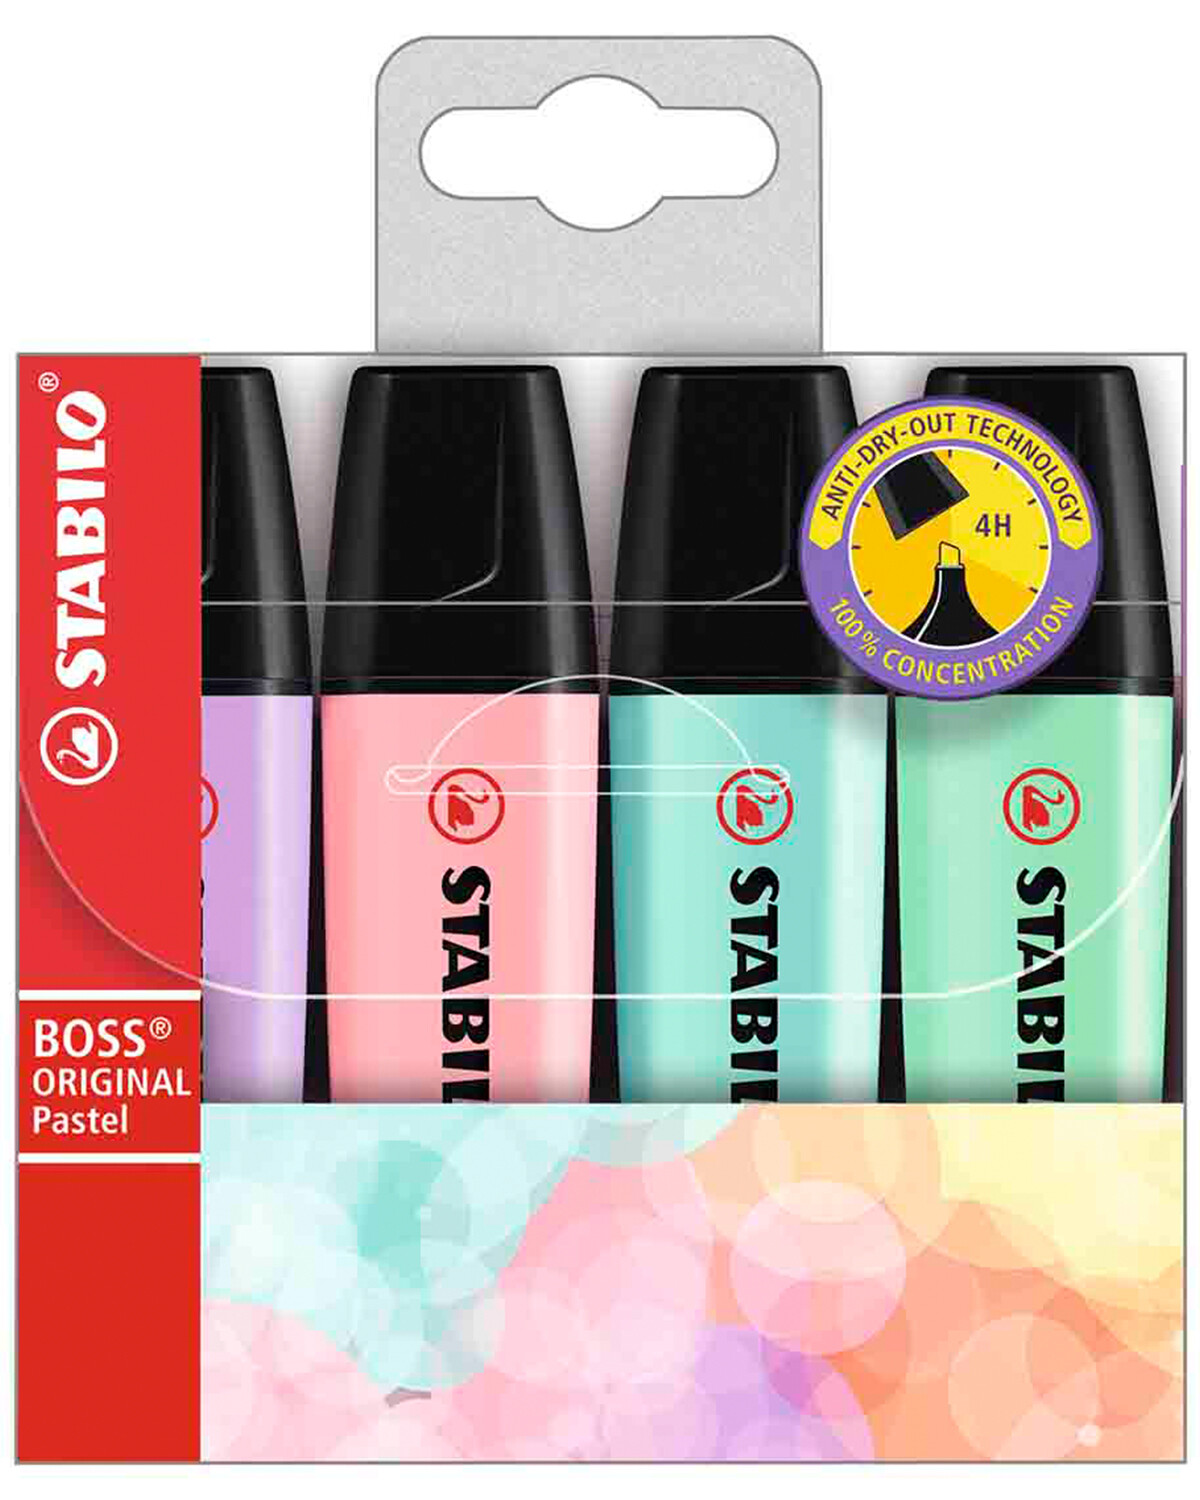 Resaltador Stabilo Boss Pastel - 4 Colores